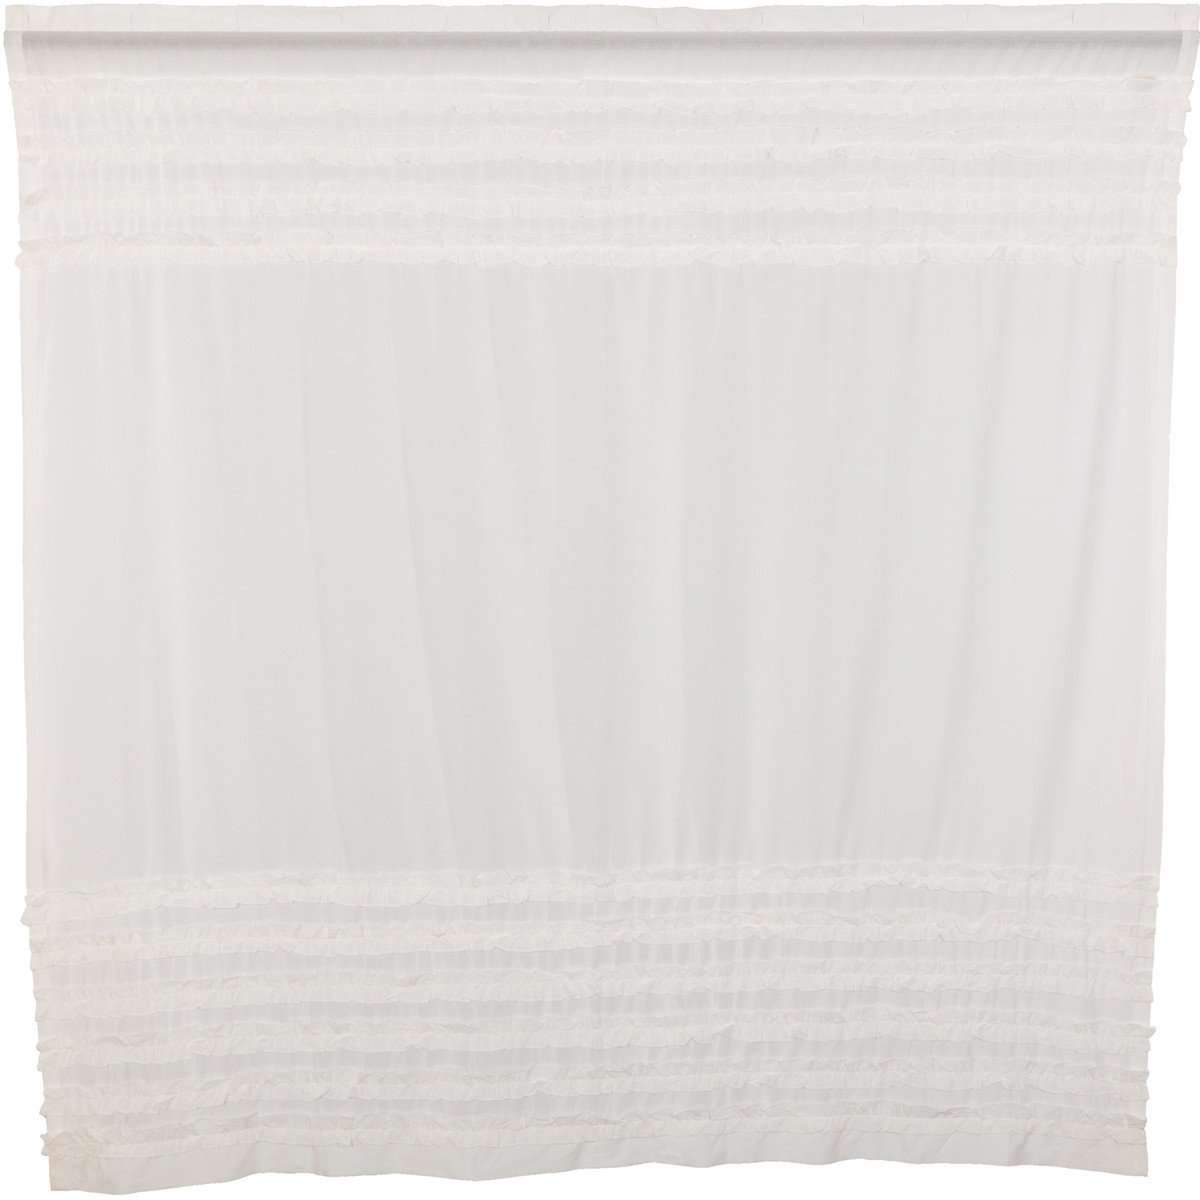 White Ruffled Sheer Petticoat Shower Curtain 72"x72" curtain VHC Brands 